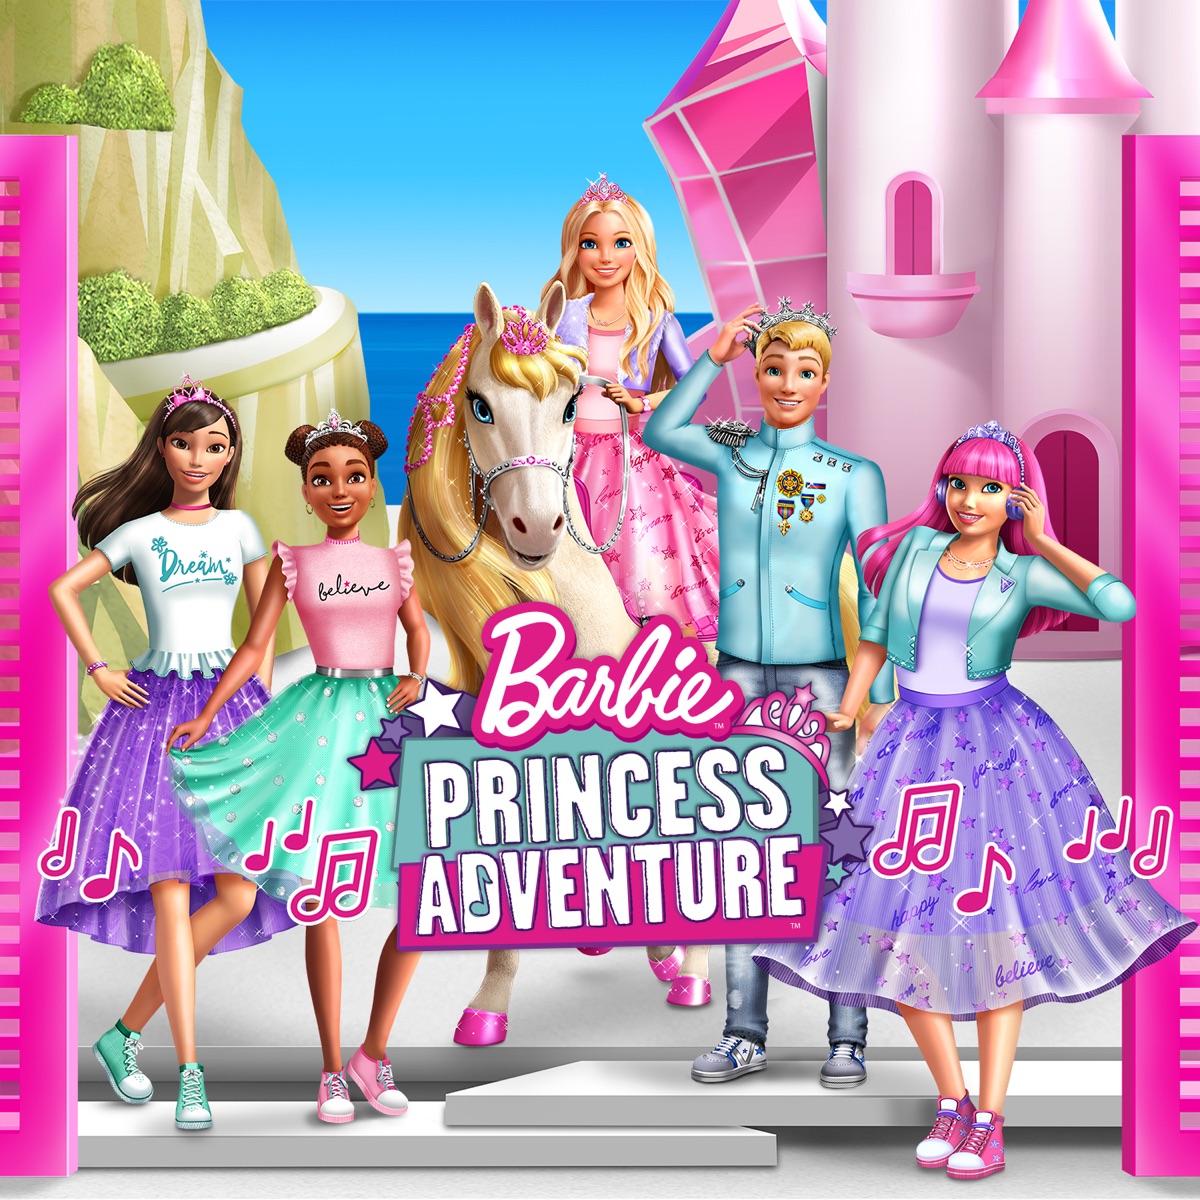 Barbie På eventyr i rummet (Original Motion Picture Soundtrack) - EP by  Barbie on Apple Music